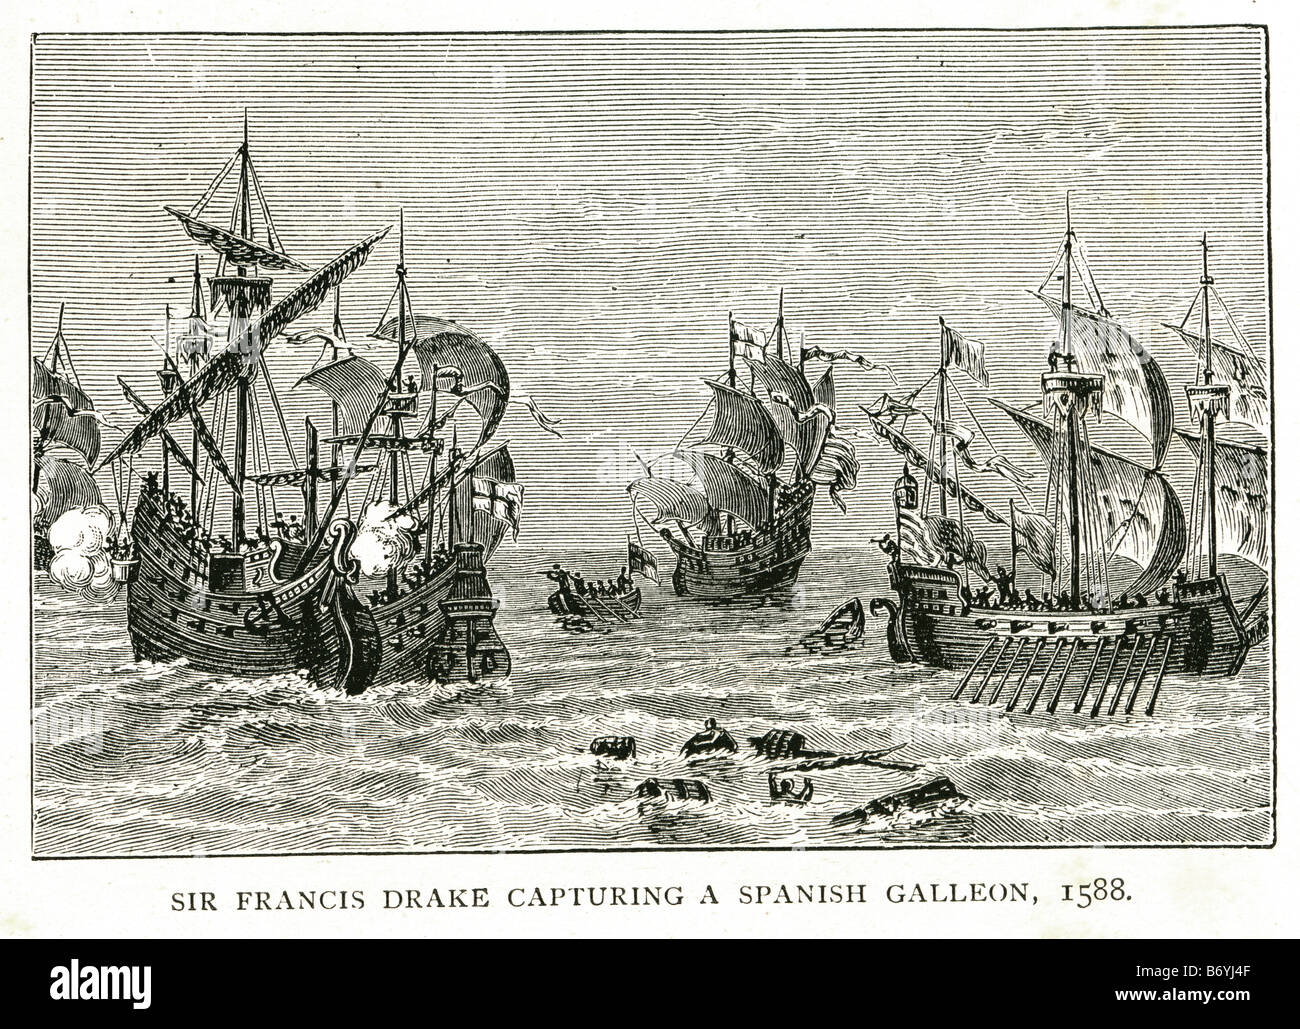 Sir Francis Drake Erfassung einer spanischen Galeone 1588-Armada erobern England Ärmelkanal Stockfoto